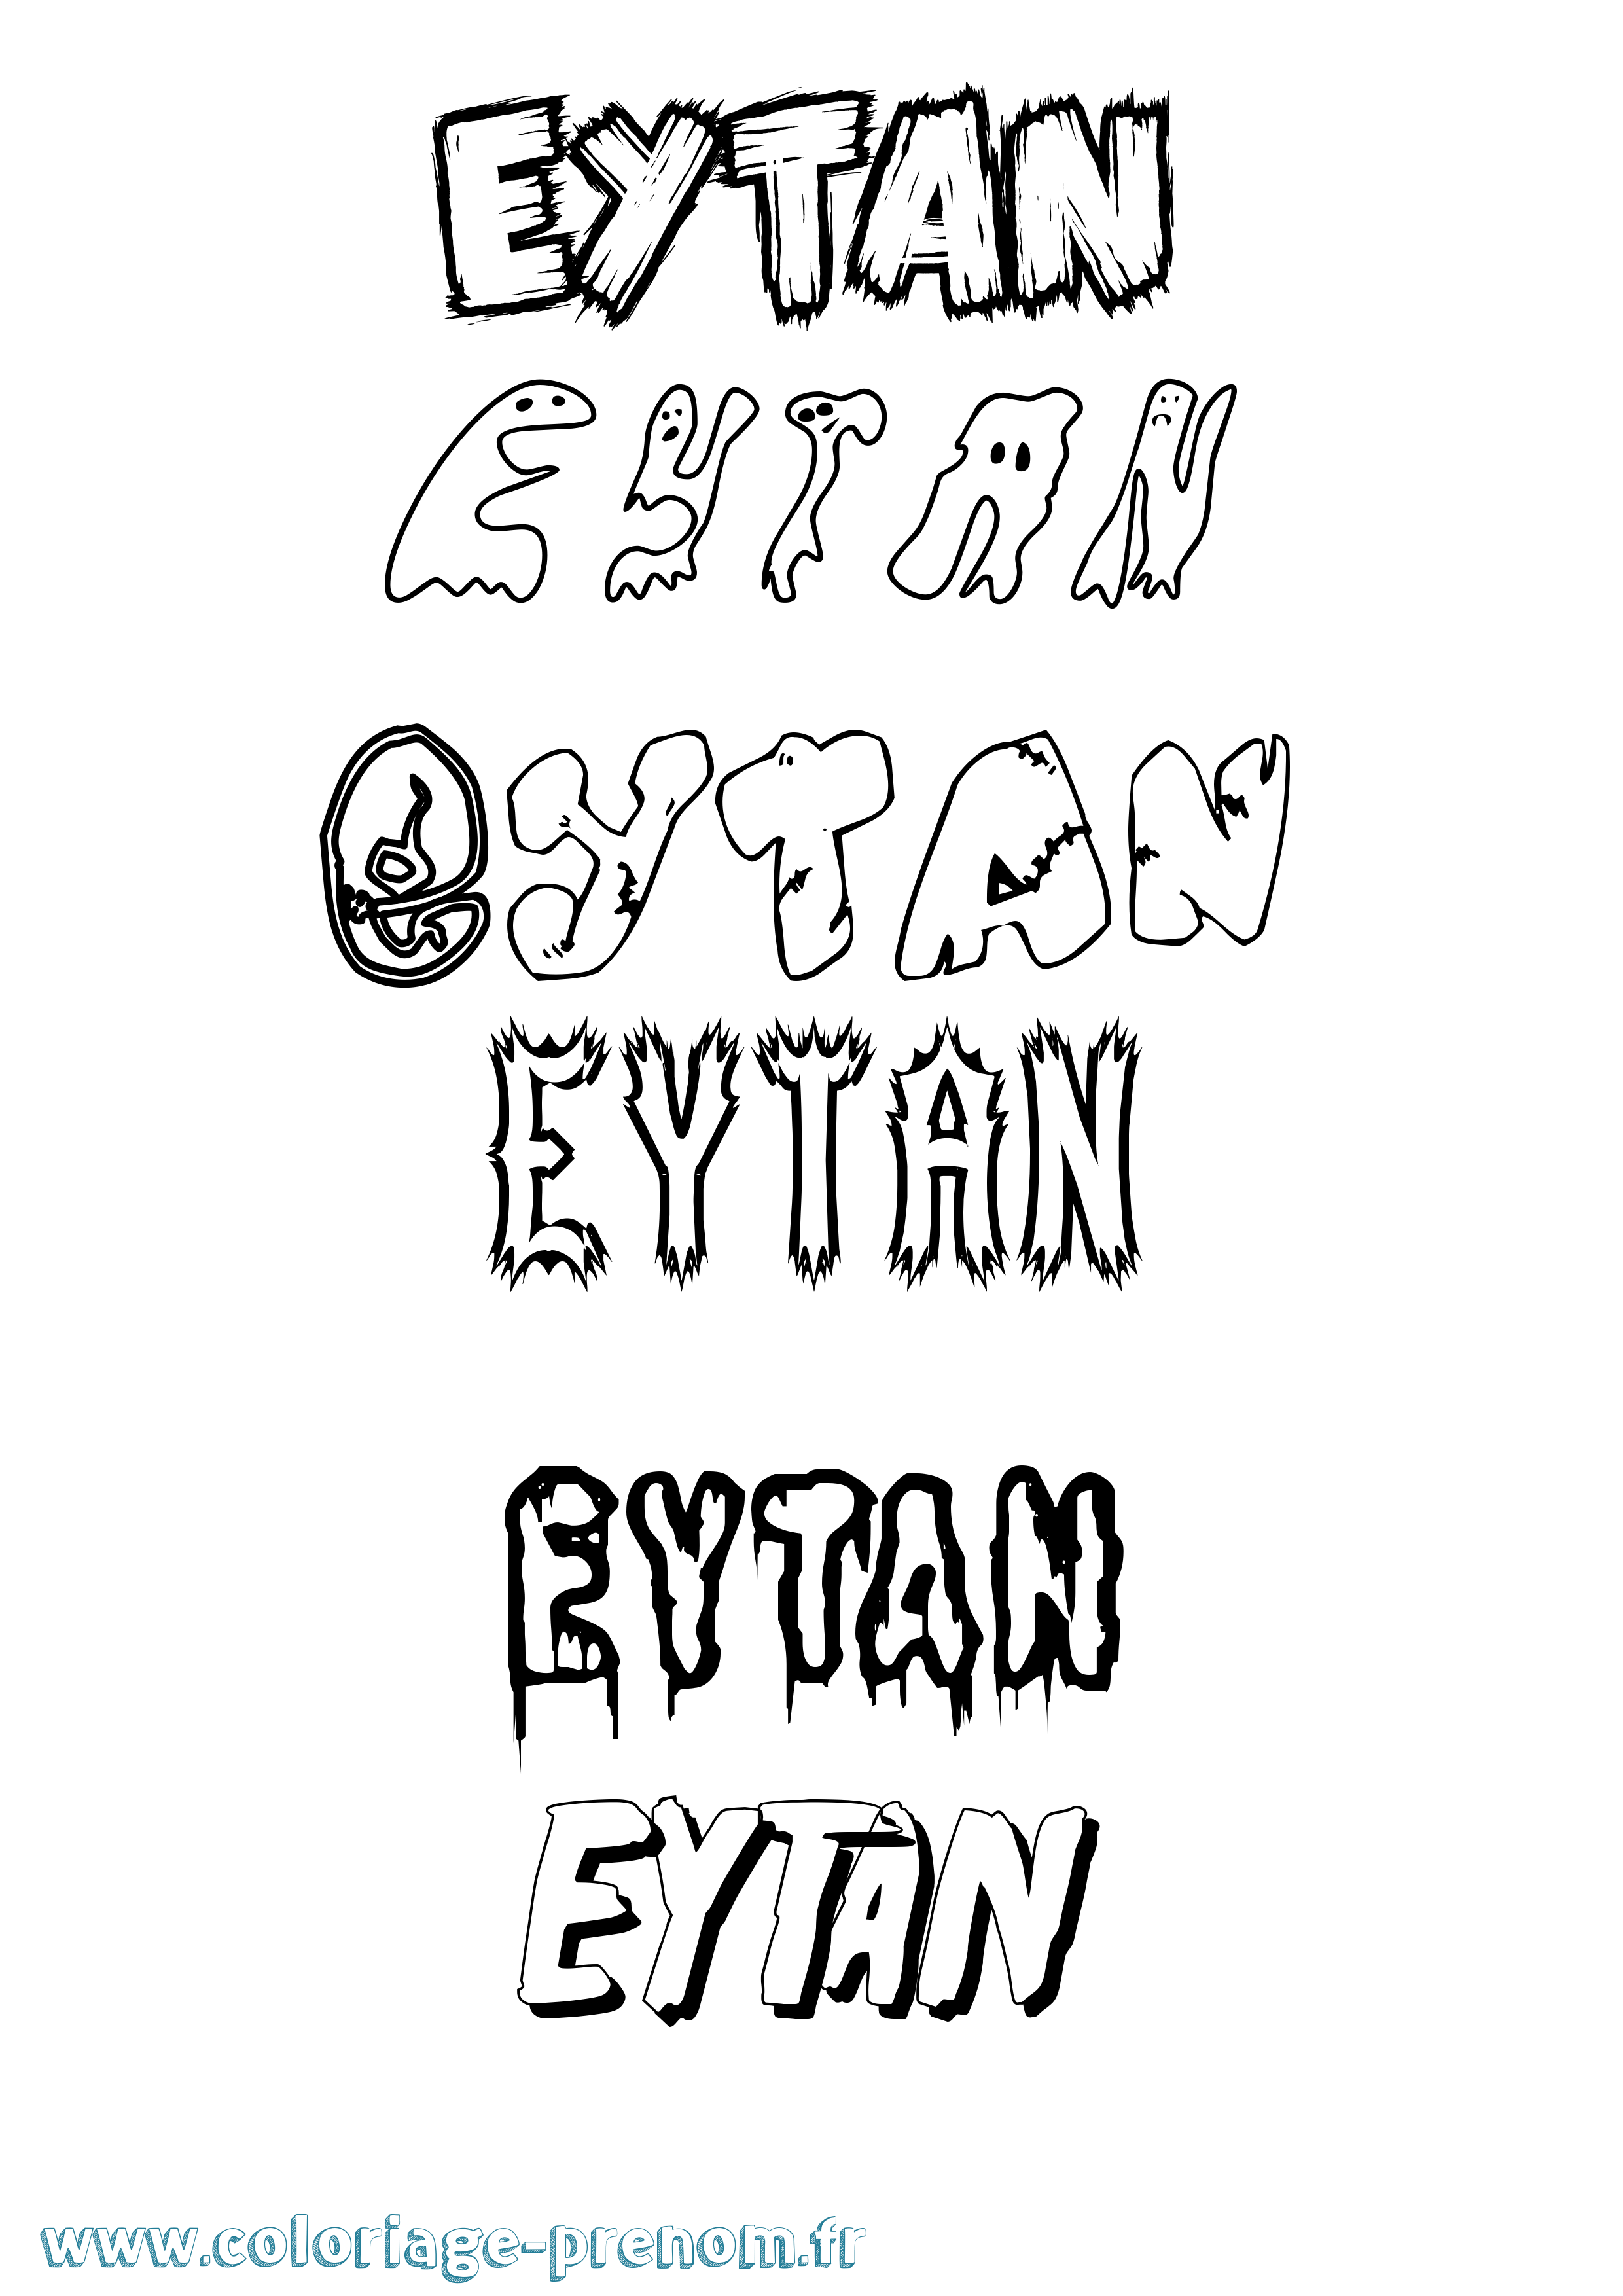 Coloriage prénom Eytan Frisson